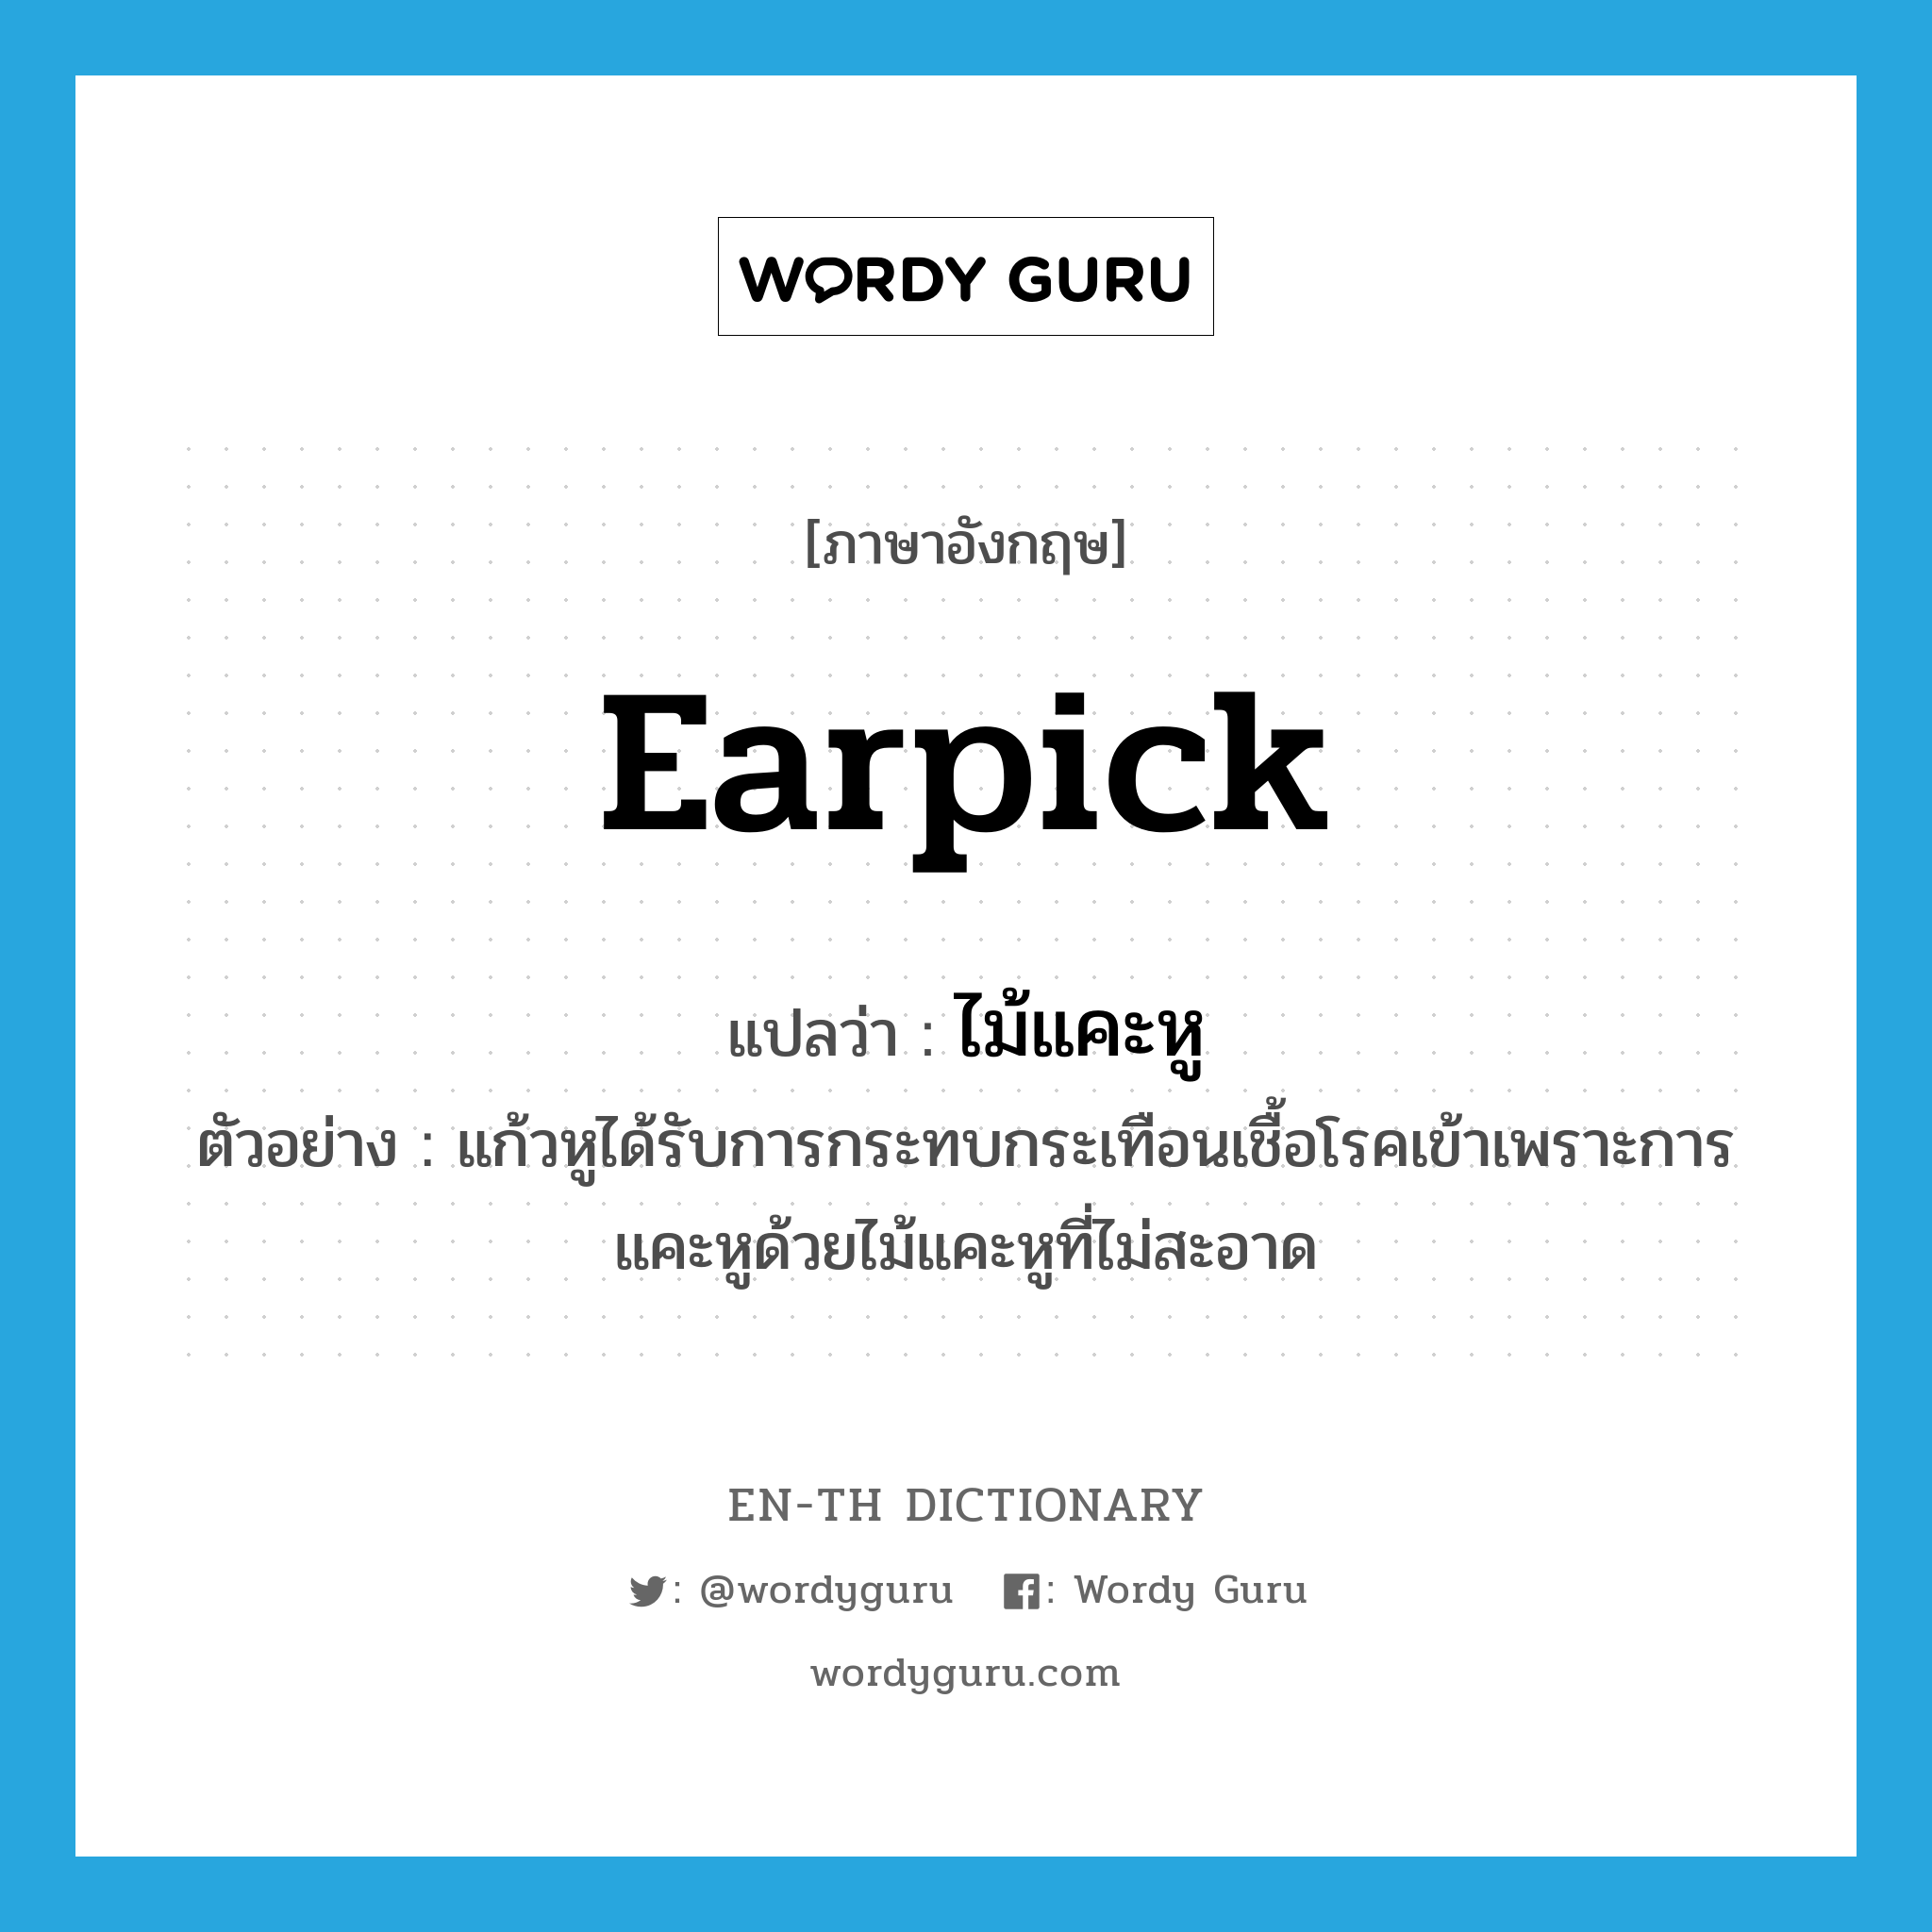 earpick แปลว่า?, คำศัพท์ภาษาอังกฤษ earpick แปลว่า ไม้แคะหู ประเภท N ตัวอย่าง แก้วหูได้รับการกระทบกระเทือนเชื้อโรคเข้าเพราะการแคะหูด้วยไม้แคะหูที่ไม่สะอาด หมวด N